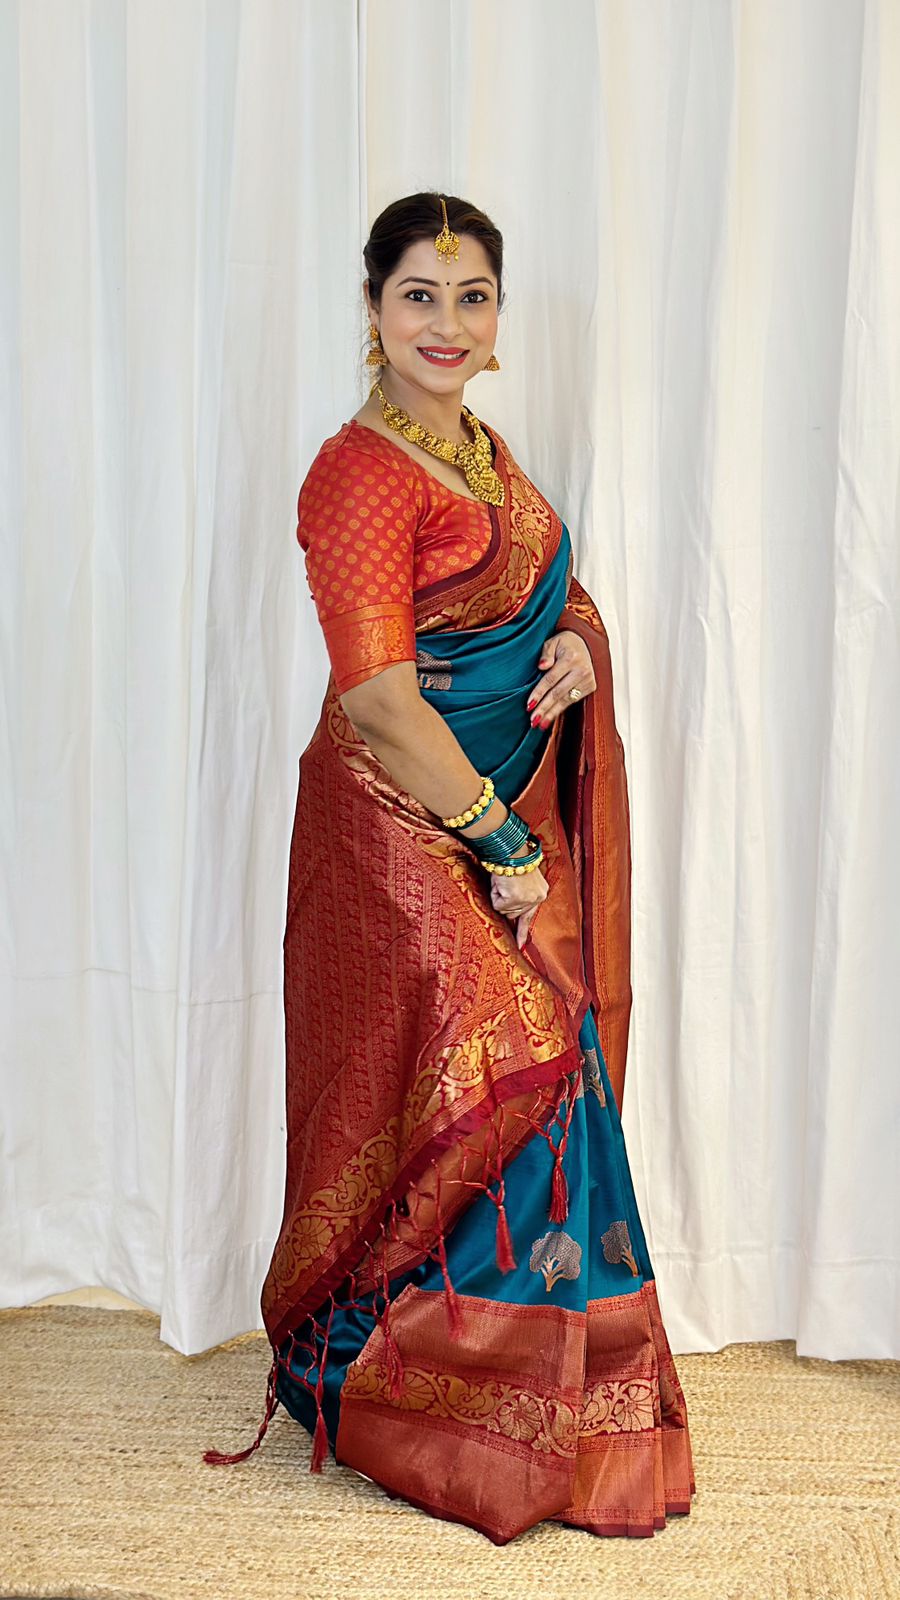 Artistic Rama Soft Banarasi Silk Saree With Moiety Blouse Piece - Colorful Saree